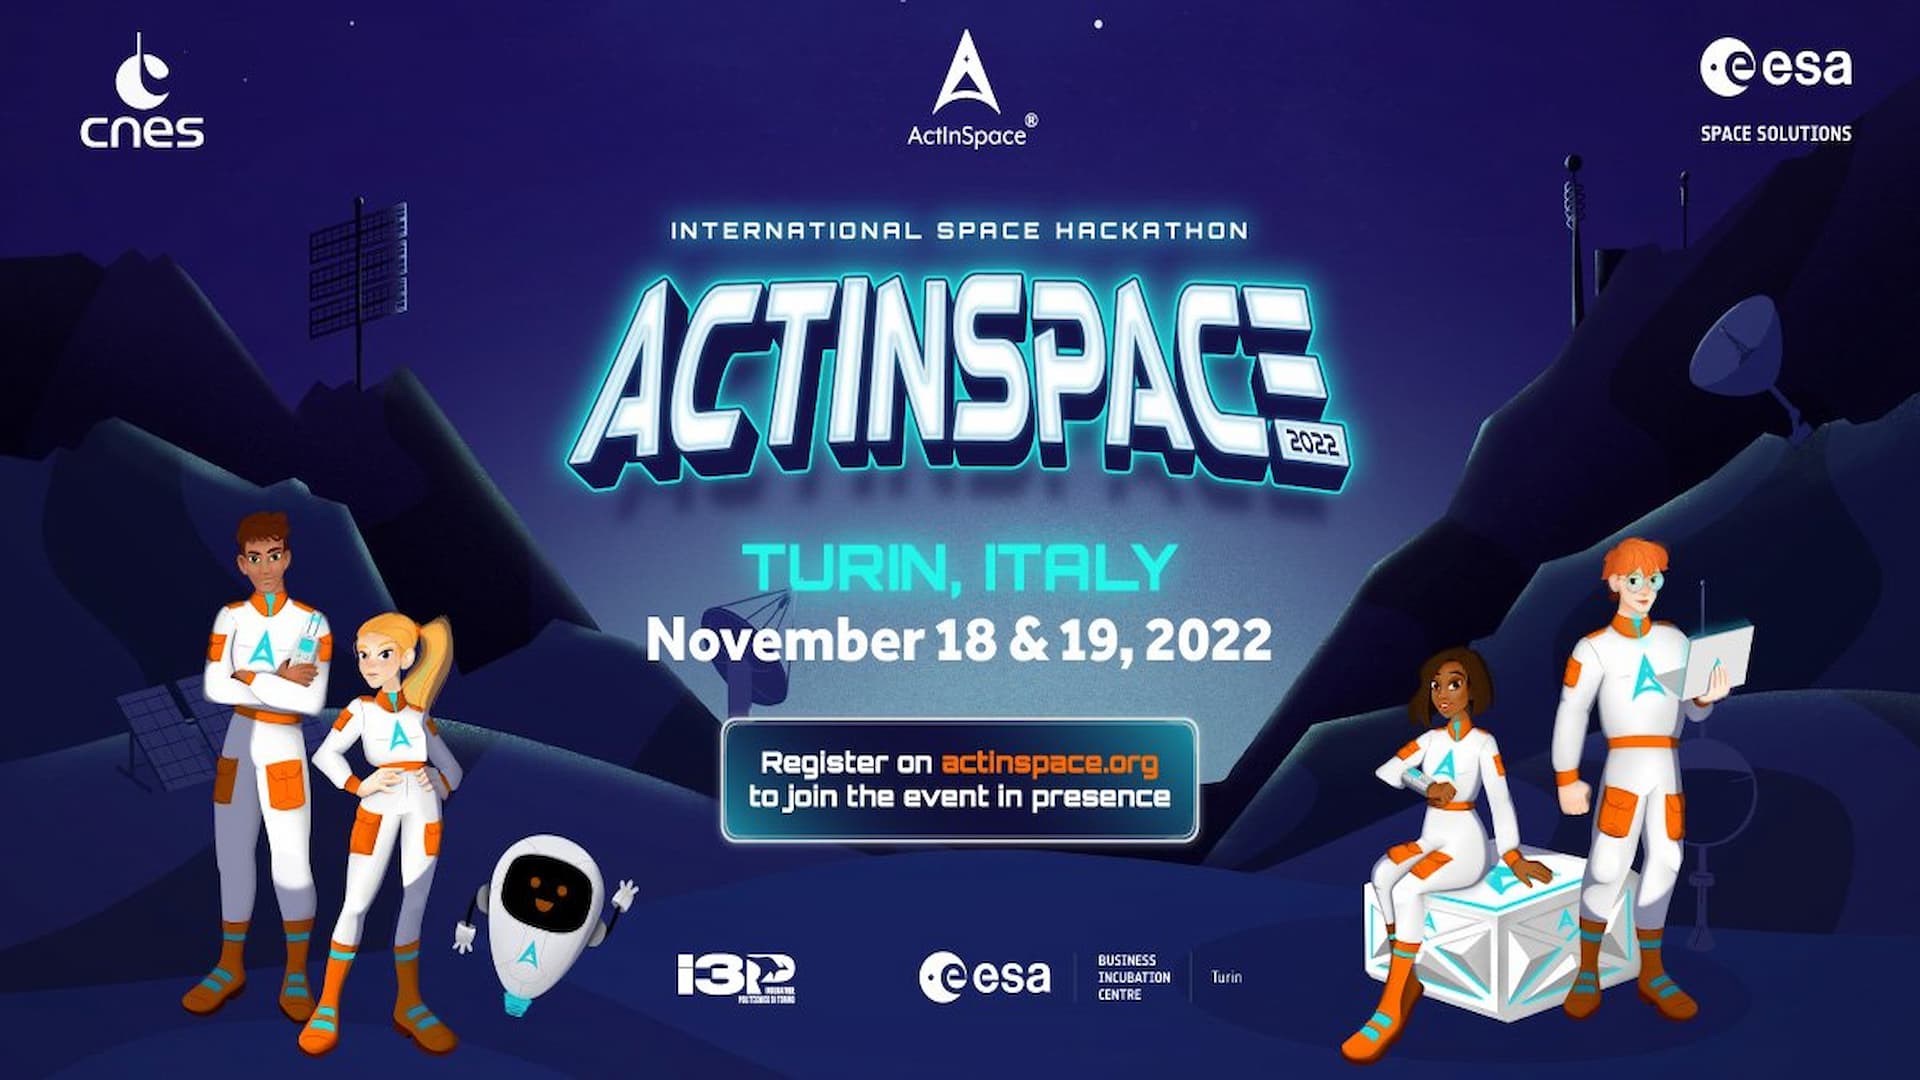 L’hackathon internazionale ActInSpace® 2022 atterra a Torino con I3P